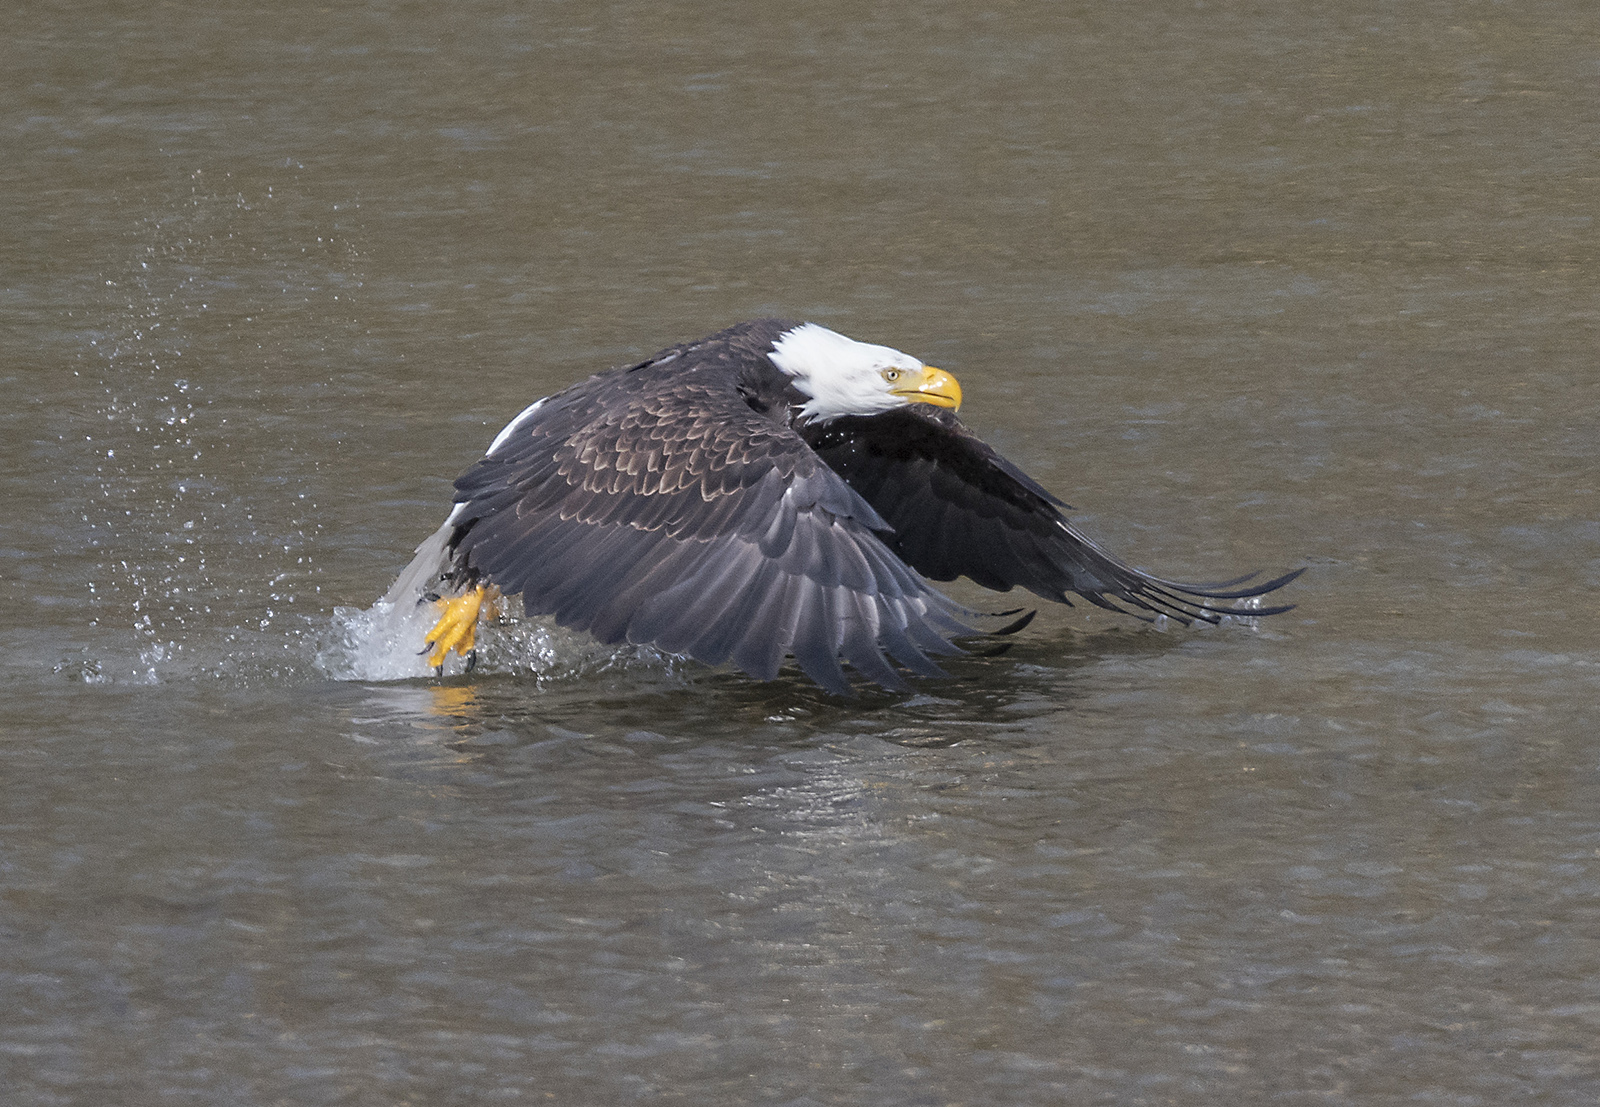 eagle taking flight from water.jpg